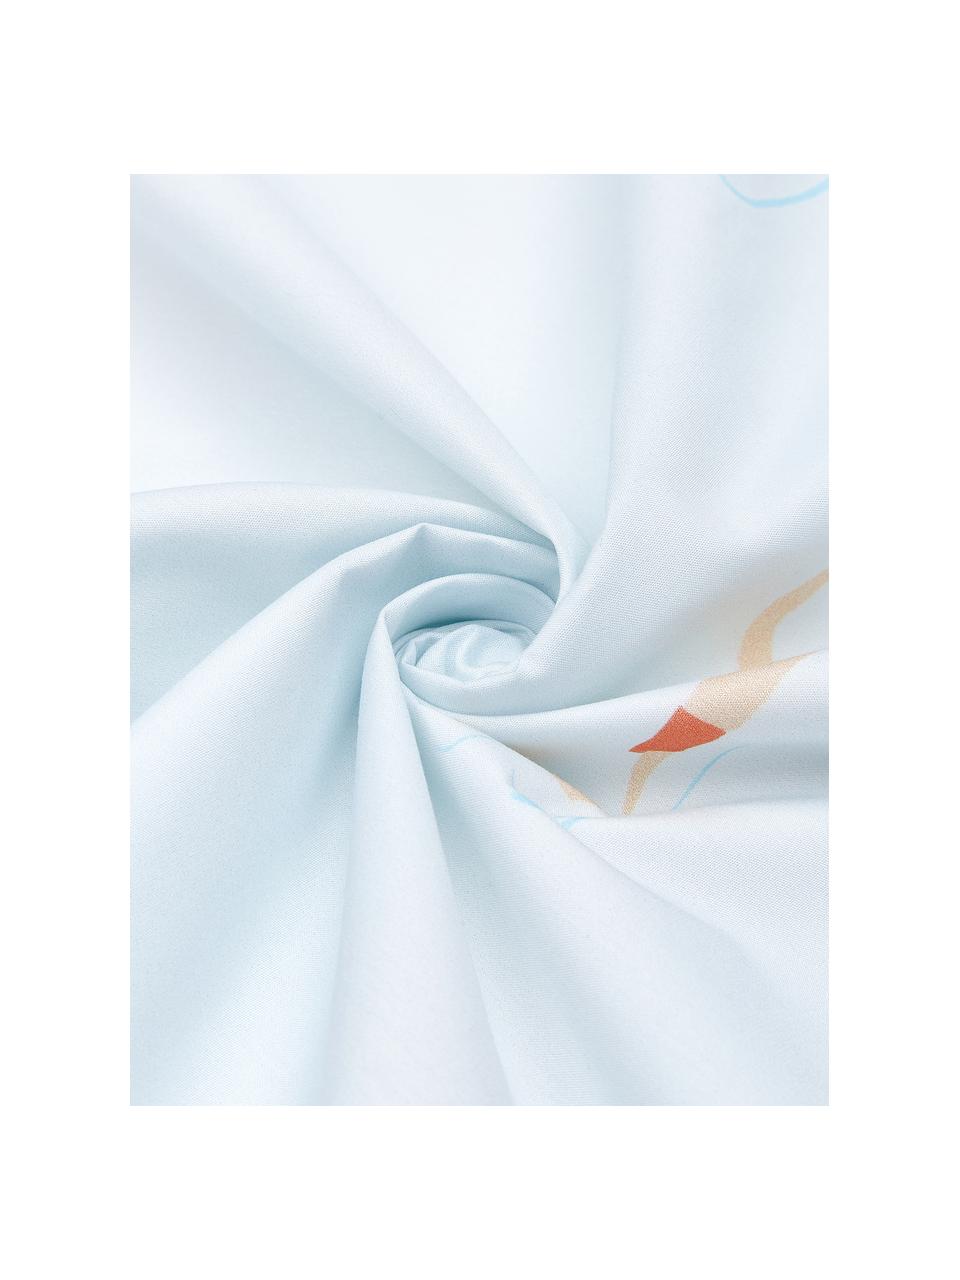 Baumwollperkal-Bettwäsche Swim mit sommerlichen Motiven, Webart: Perkal Fadendichte 180 TC, Weiß, Blau, Mehrfarbig, 135 x 200 cm + 1 Kissen 80 x 80 cm